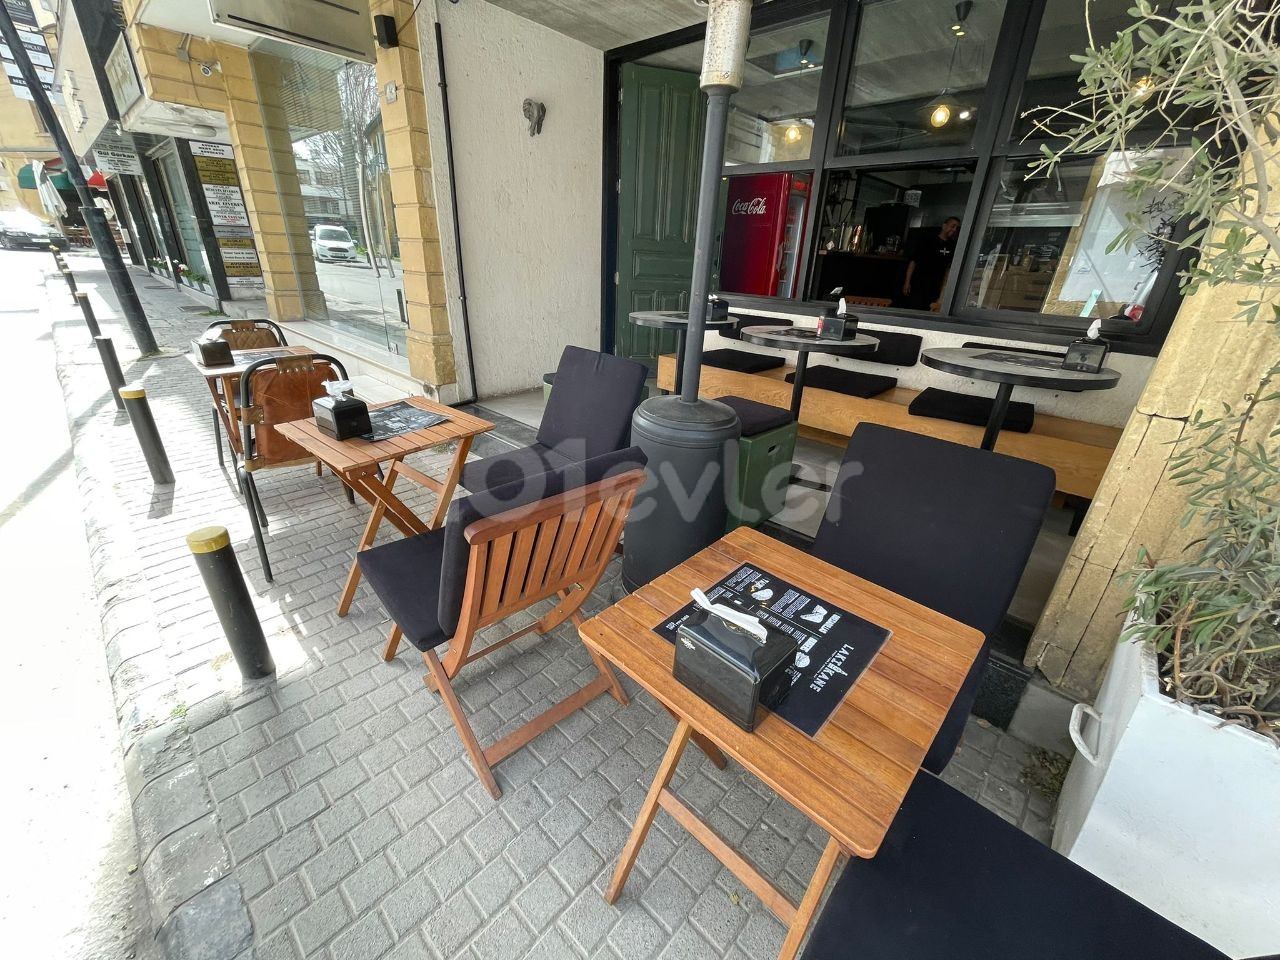 Restaurant & CAFE zu verkaufen mit allen Gegenständen in Nikosia Stadtmauern!! ** 